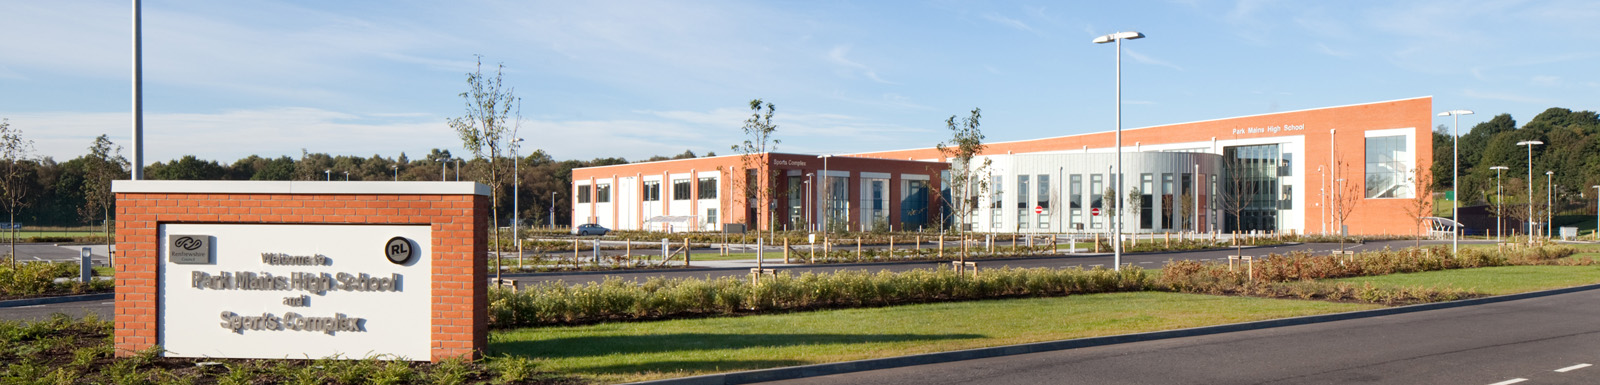 Park Mains School in Erskine